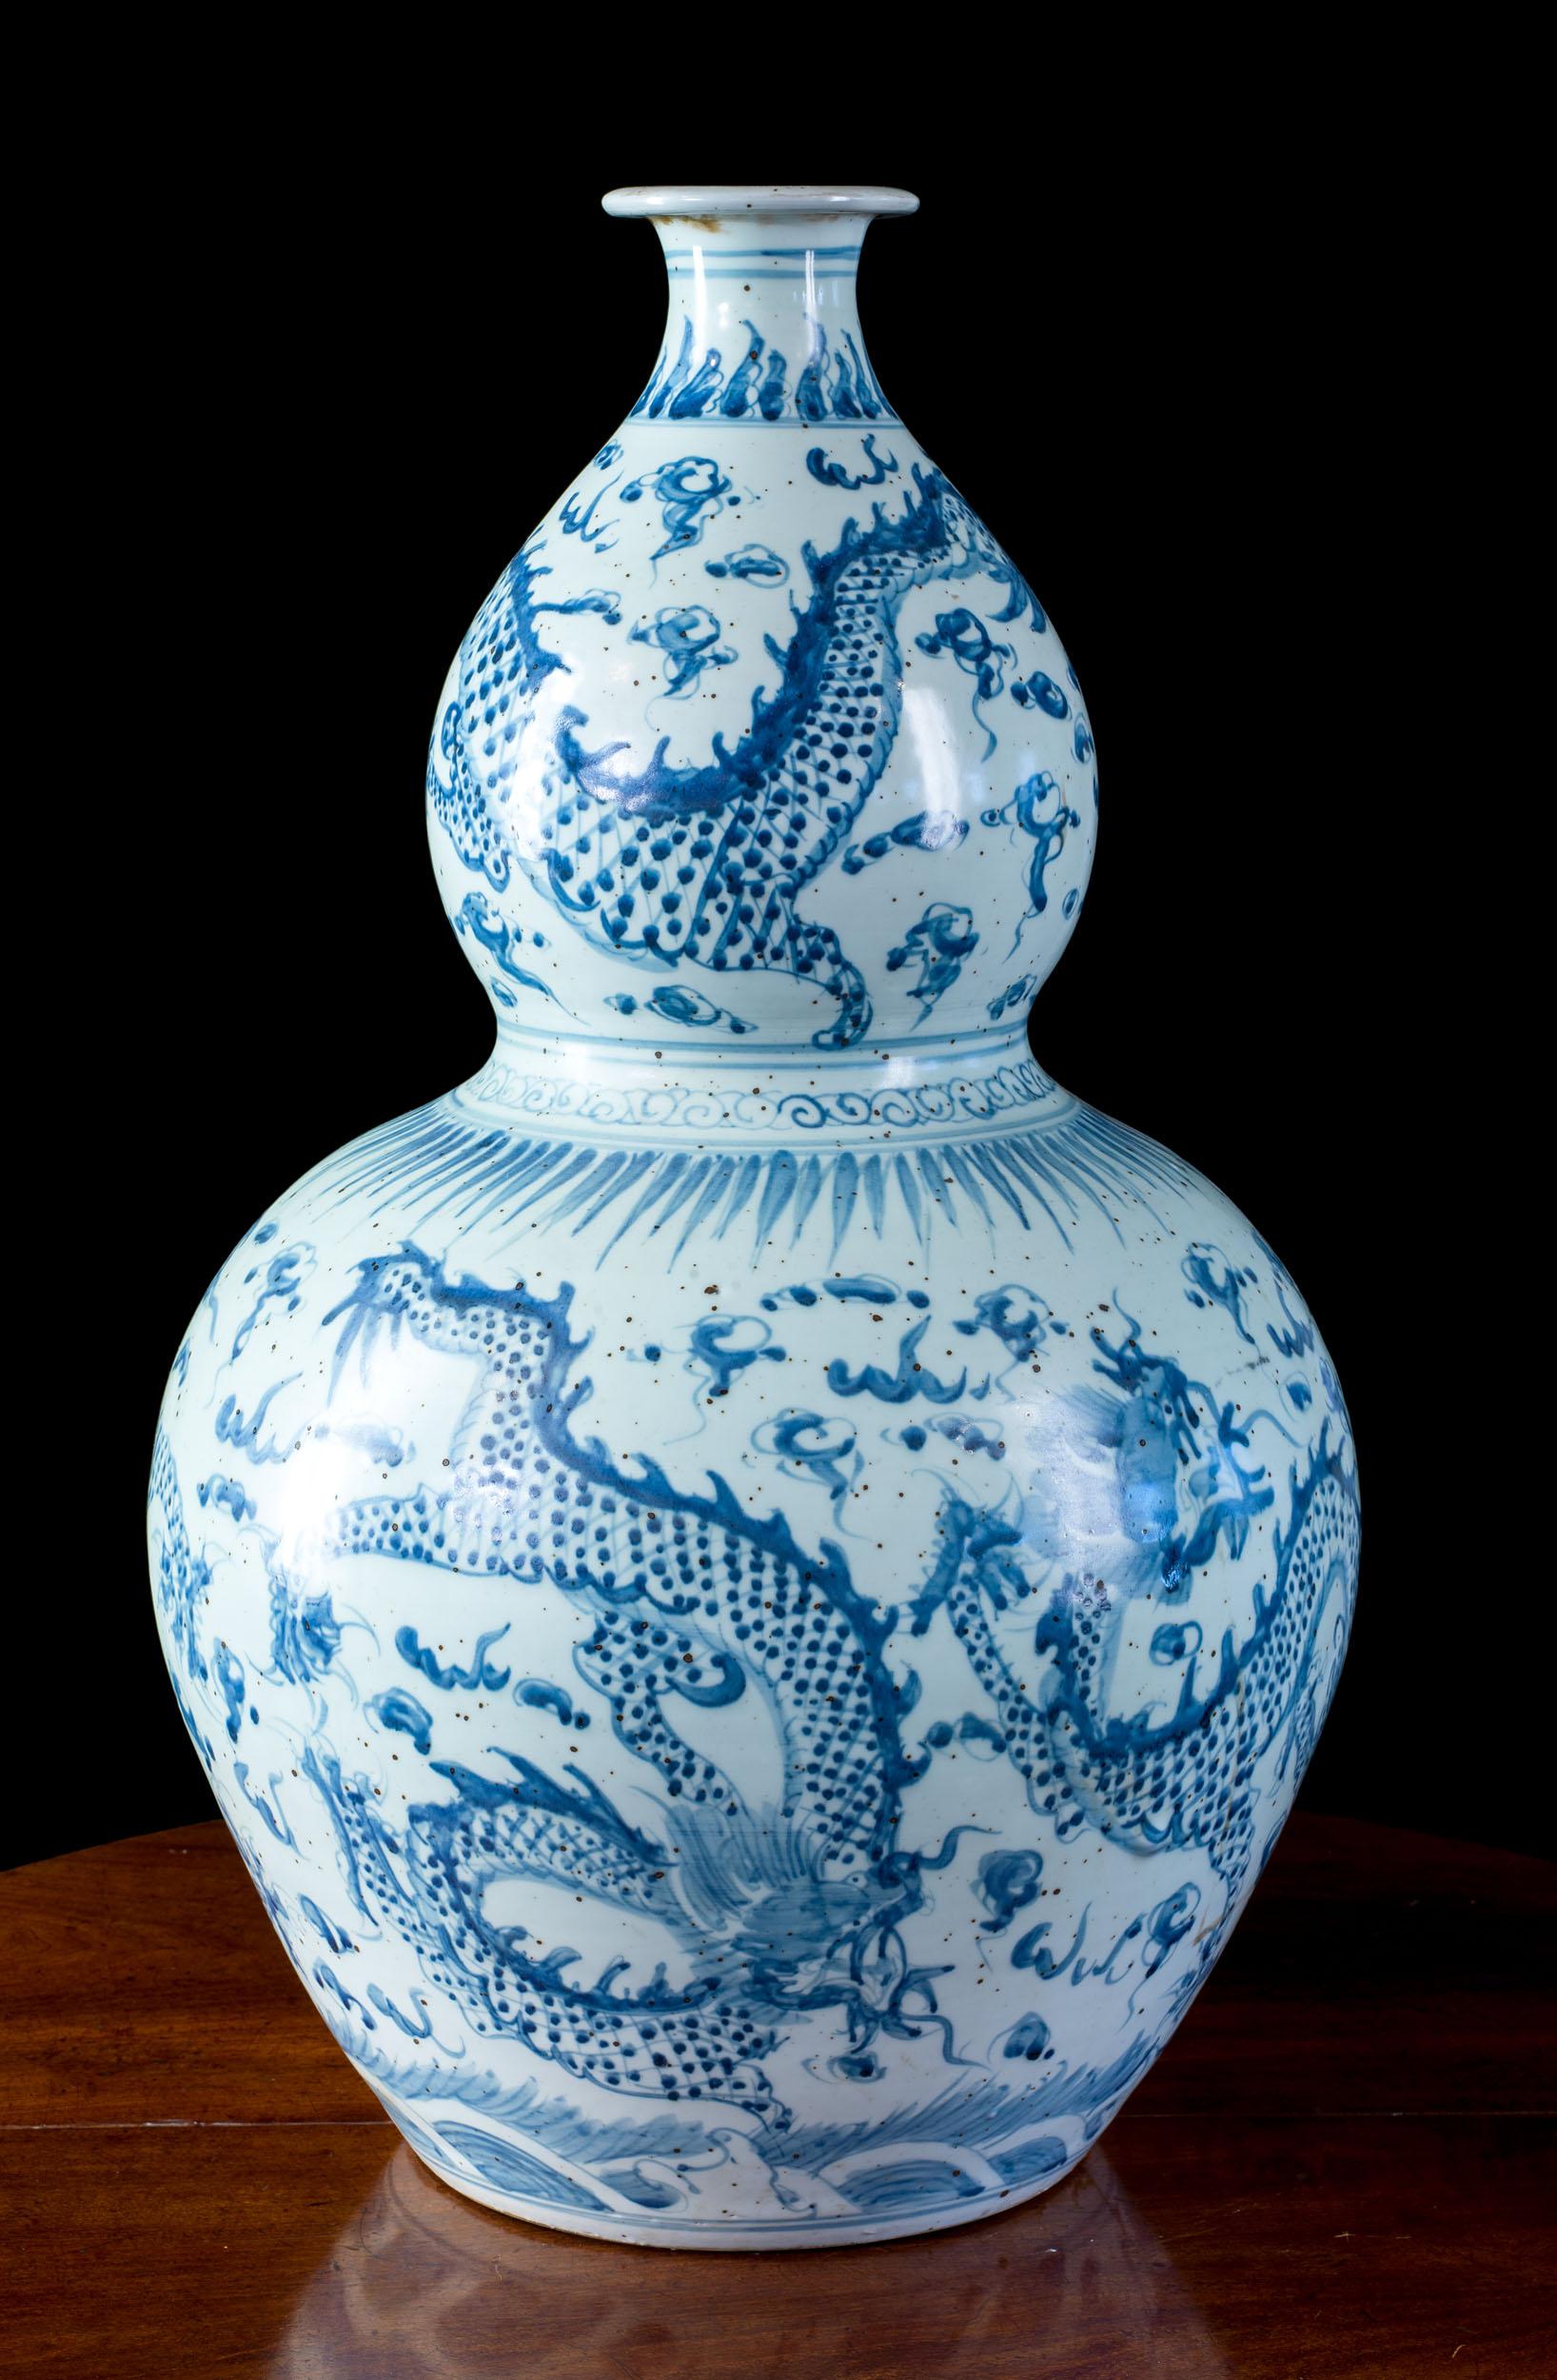 Un ancien vase calebasse chinois bleu et blanc. Le vase est peint à la main avec le motif du 